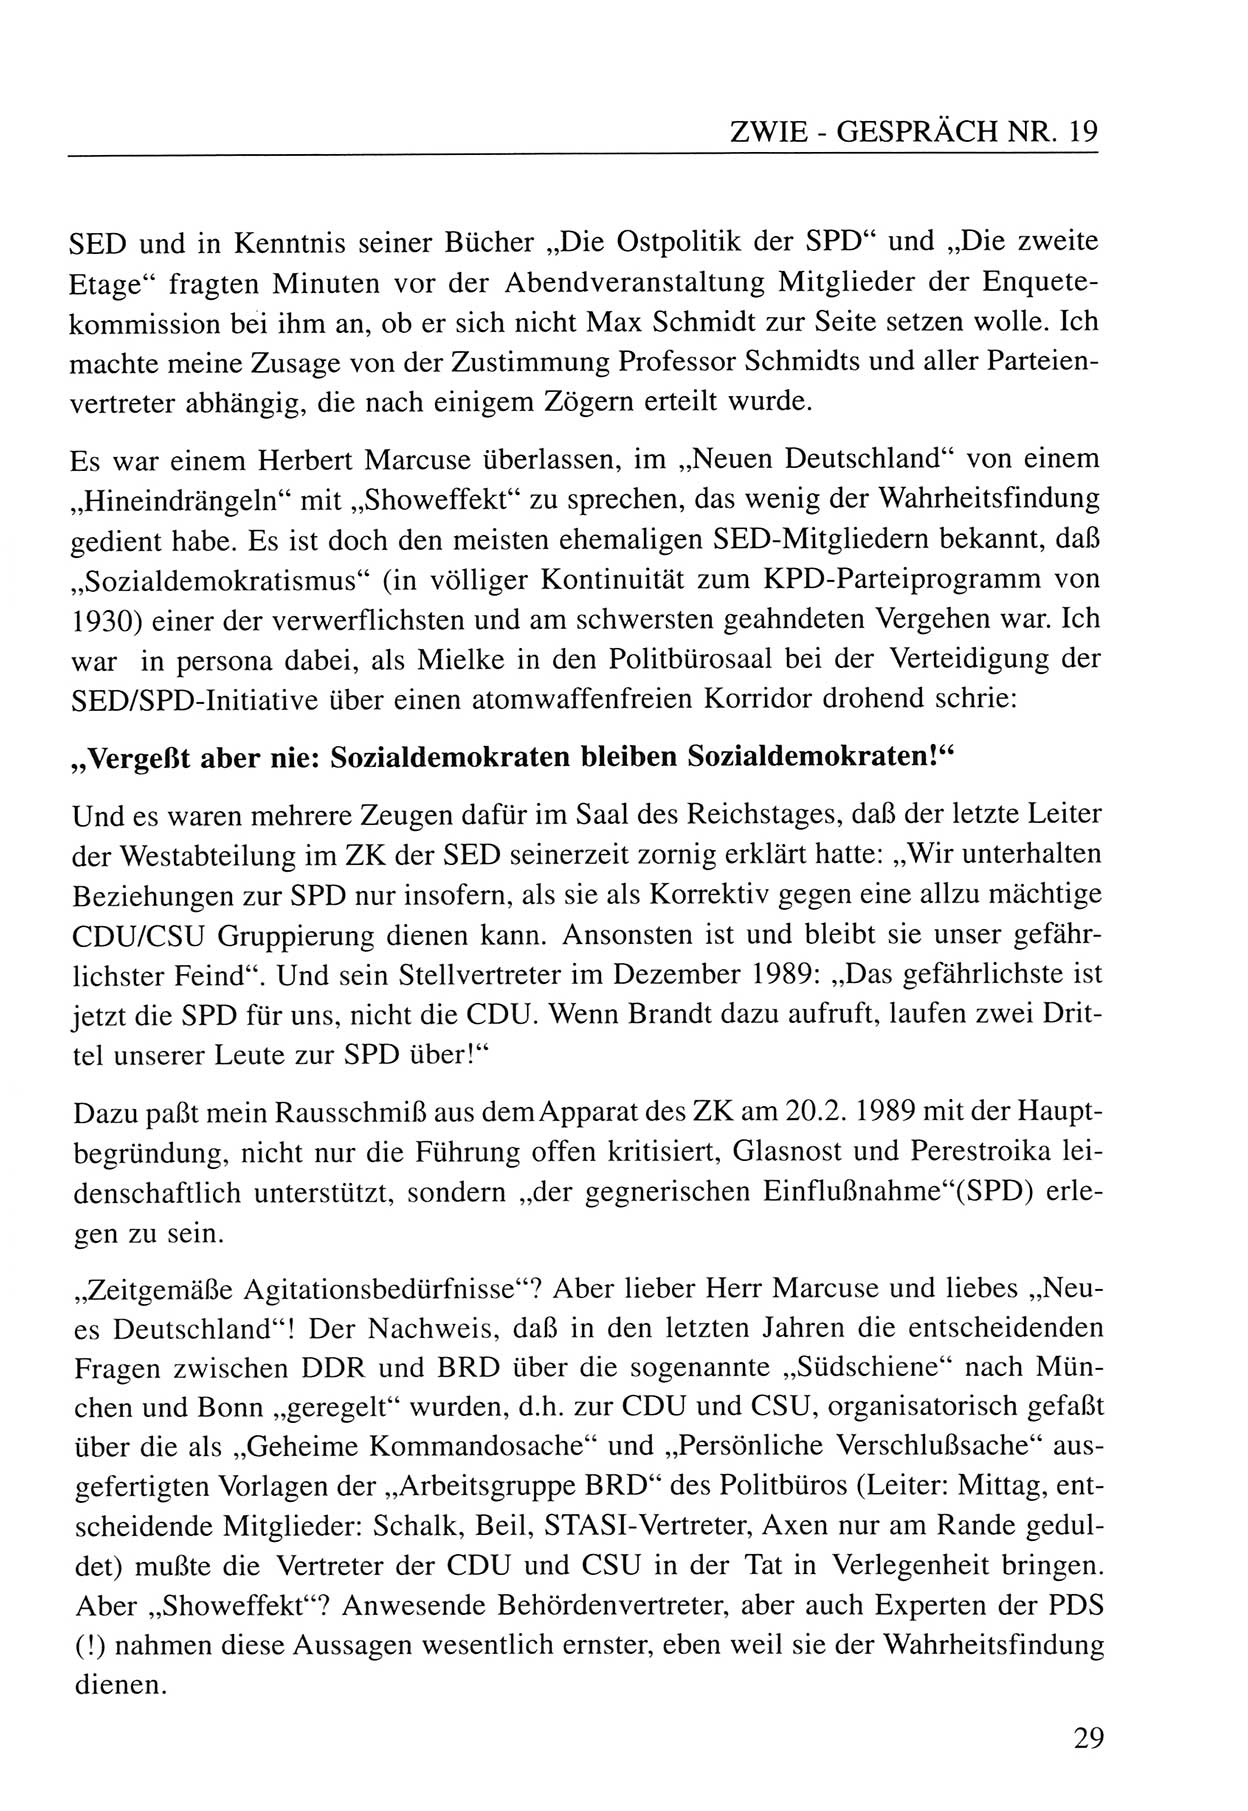 Zwie-Gespräch, Beiträge zum Umgang mit der Staatssicherheits-Vergangenheit [Deutsche Demokratische Republik (DDR)], Ausgabe Nr. 19, Berlin 1994, Seite 29 (Zwie-Gespr. Ausg. 19 1994, S. 29)